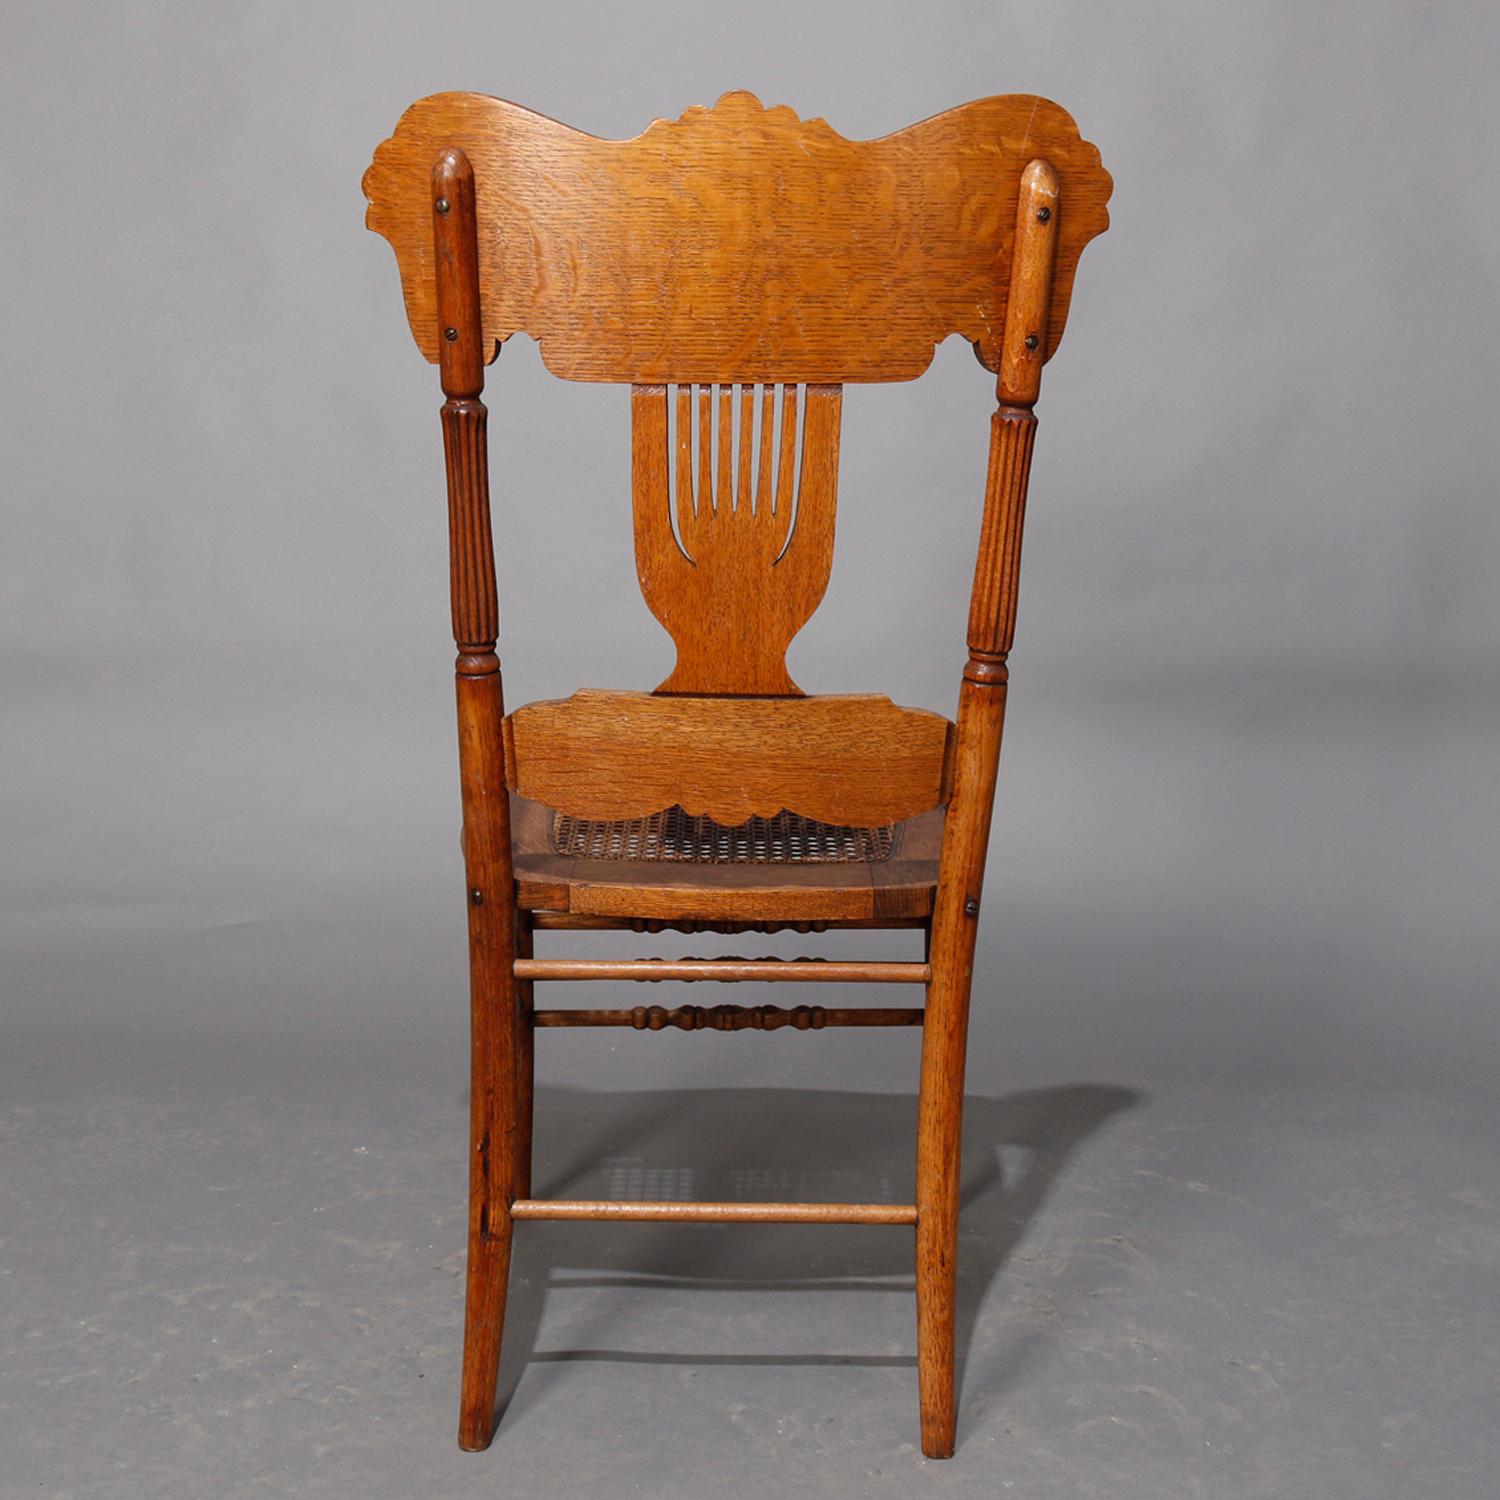 antique oak chairs